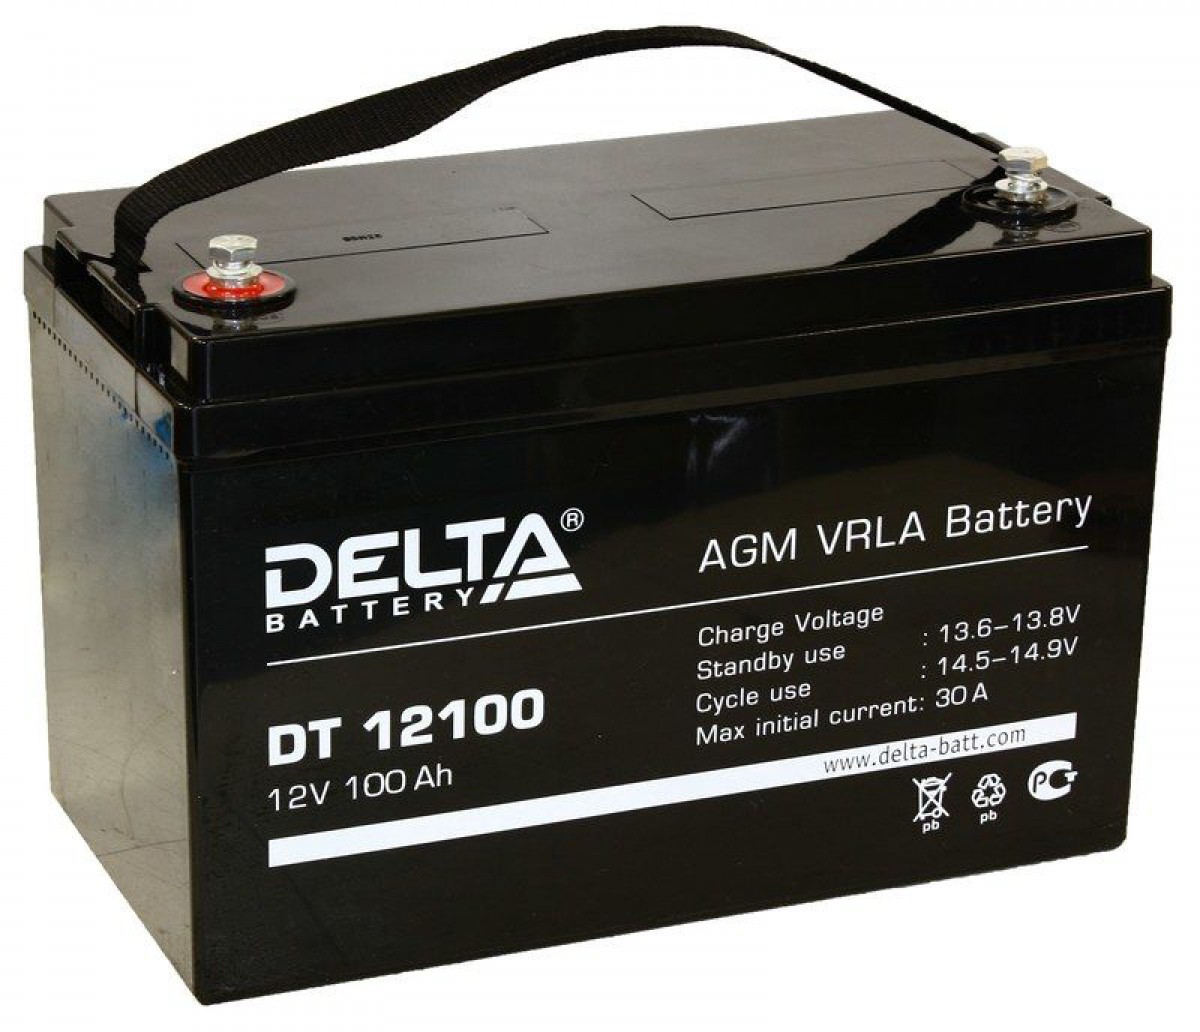 Аккумулятор для машины 12 вольт. Delta Battery DT 12100. Аккумуляторная батарея Delta DT 12100 (12v / 100ah). DT 12100 Delta аккумуляторная батарея. Delta 100 Ач 12 вольт DT 12100.